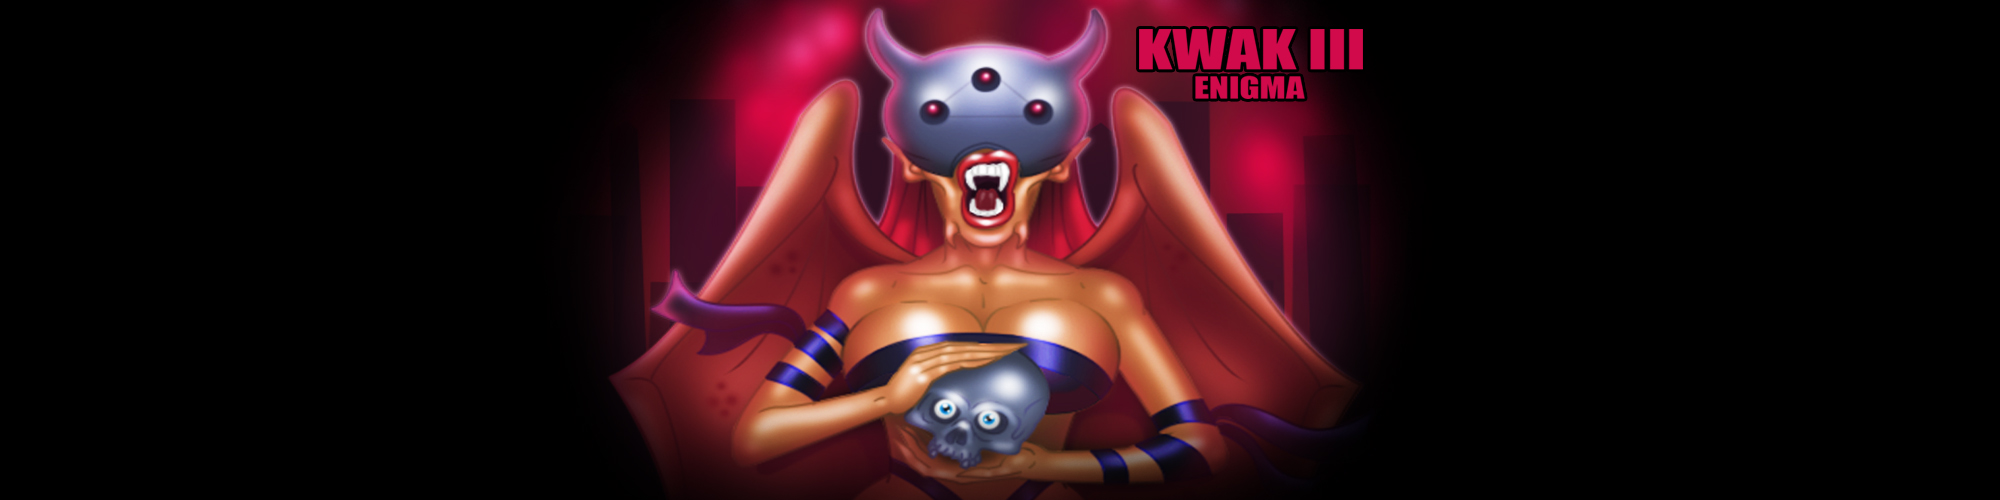 KWAK III Enigma